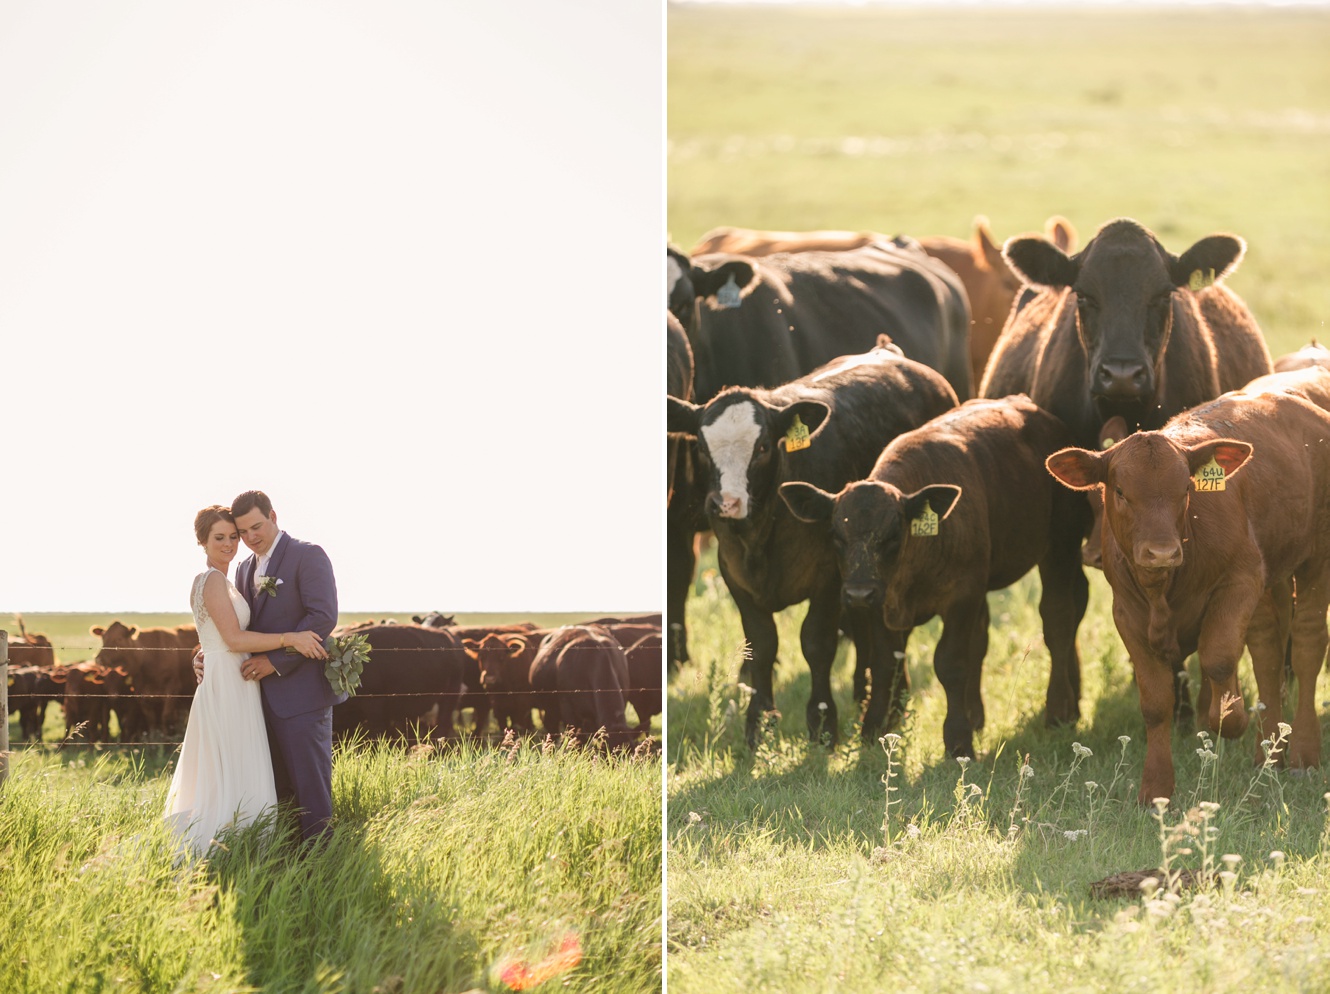 Wedding photos with cows